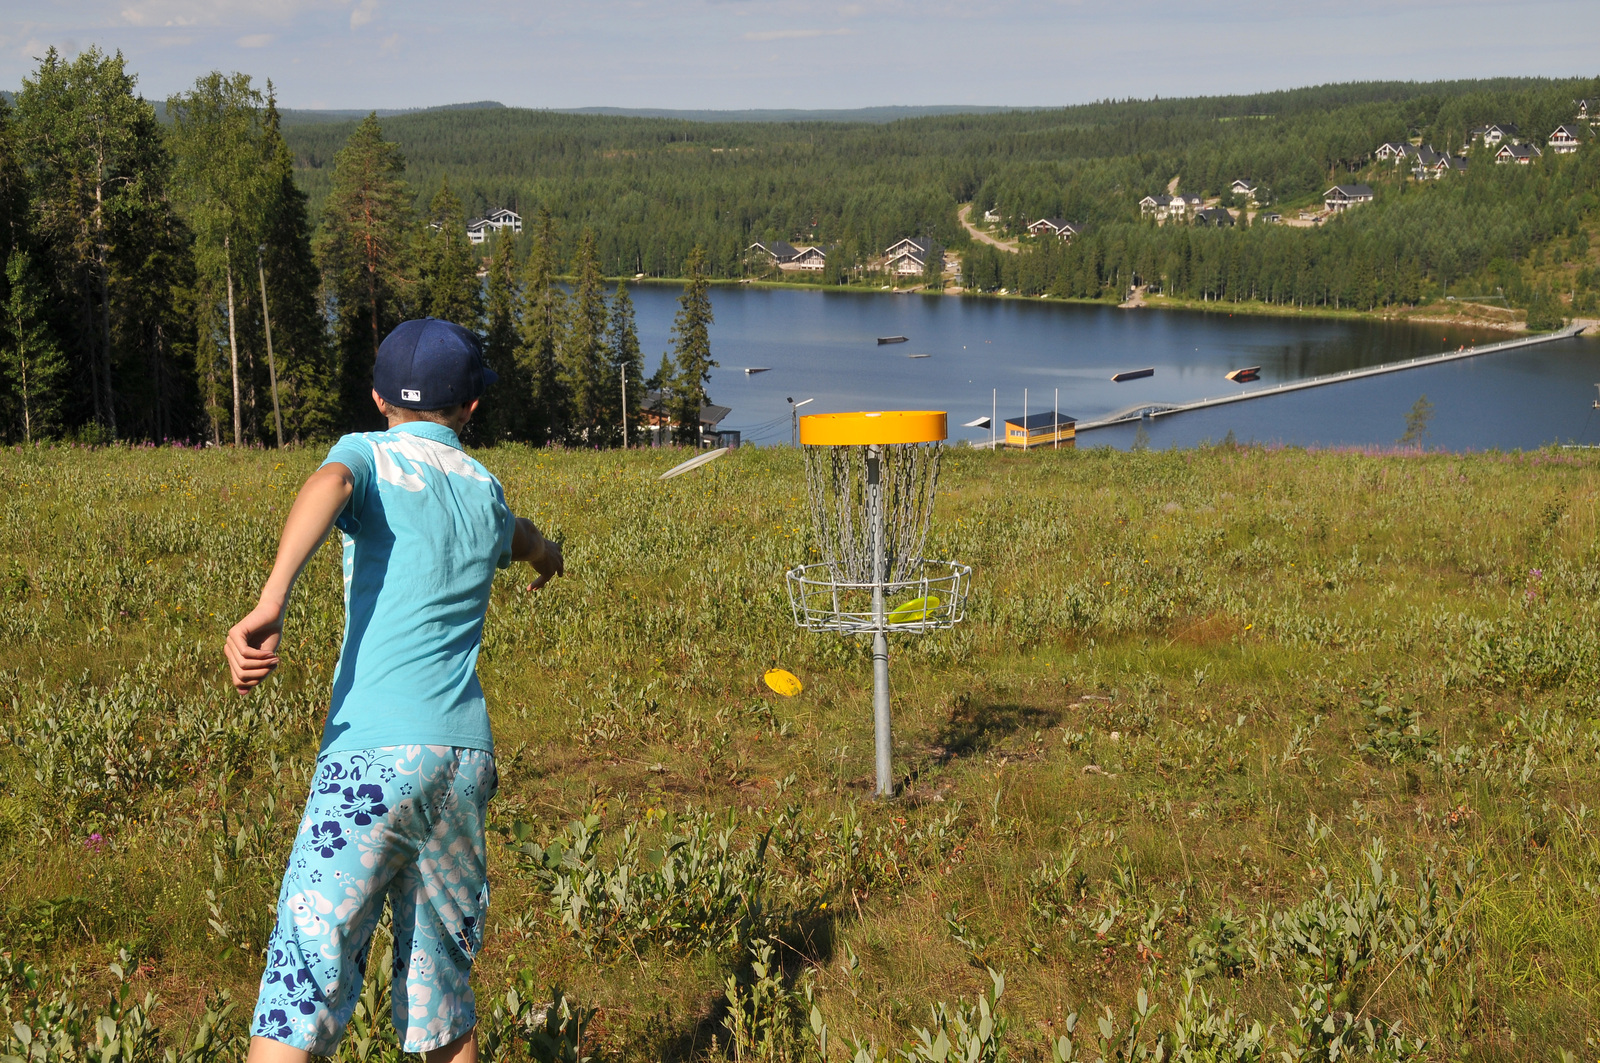 Lapsi pelaa frisbeegolfia korkealla rinteessä. Alhalla olevan järven rannalla on mökkialue.